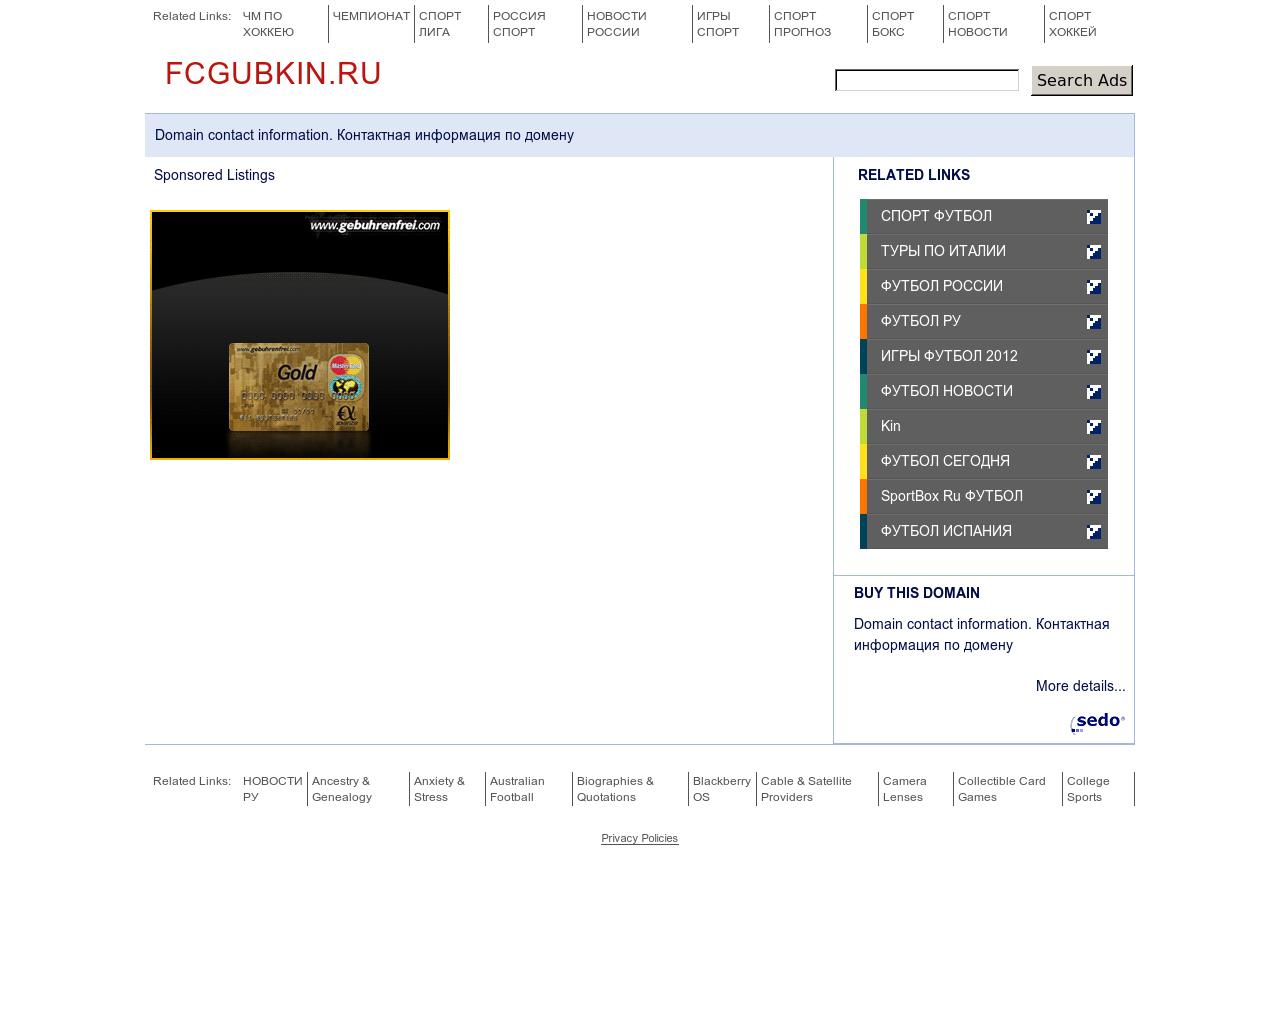 Изображение сайта fcgubkin.ru в разрешении 1280x1024